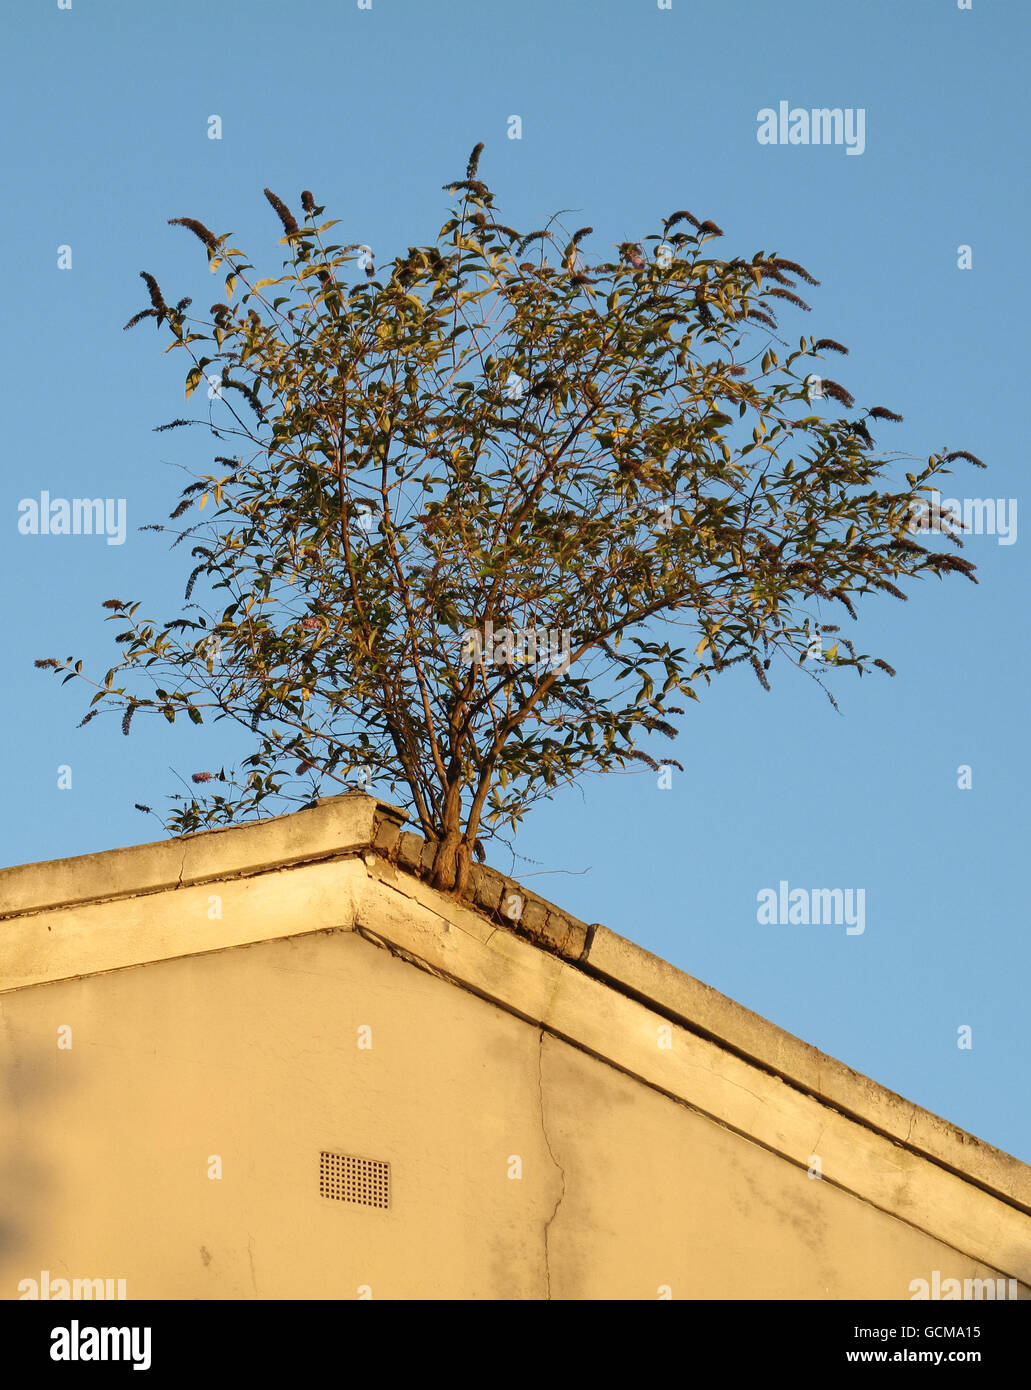 Ein Baum wächst aus dem Dach eines verwelkenden Hauses im Westen Londons. Viele Käufer betrachten, dass eine Umfrage oder Hauskäufer berichten, ist wichtig, bevor Sie eine Immobilie kaufen. Stockfoto